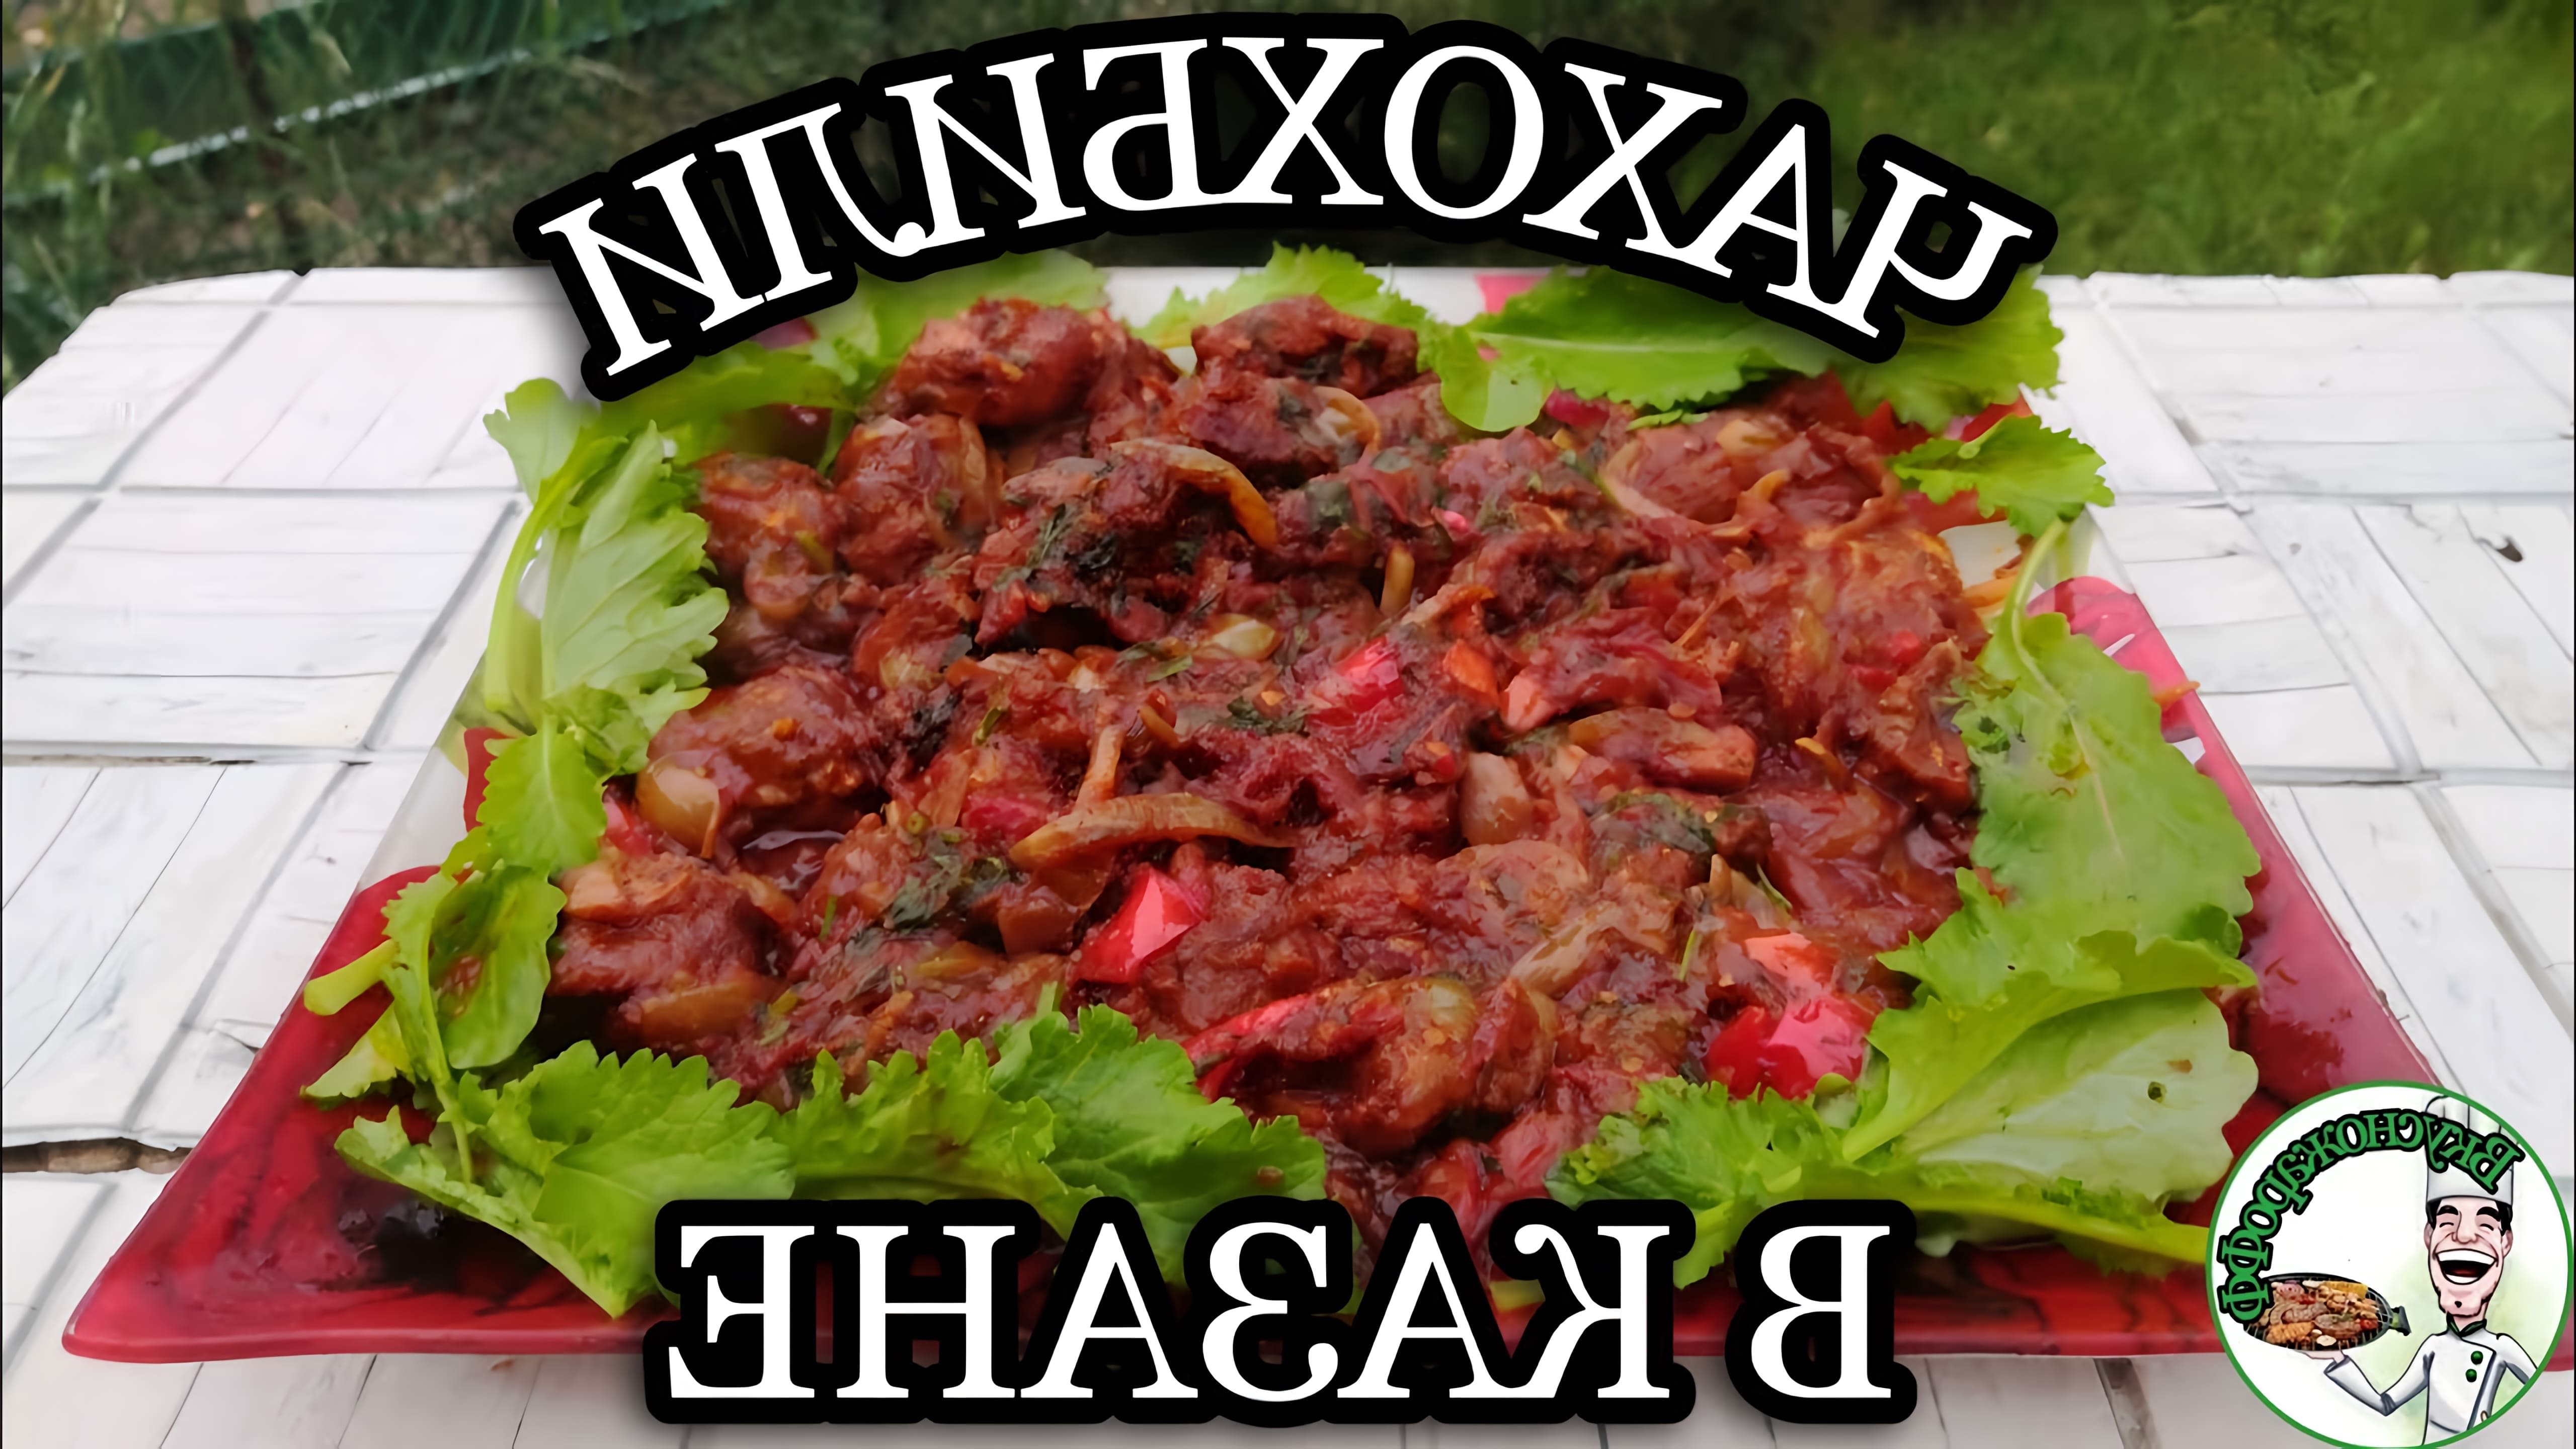 В этом видео демонстрируется процесс приготовления грузинского блюда "Чахохбили" из свинины